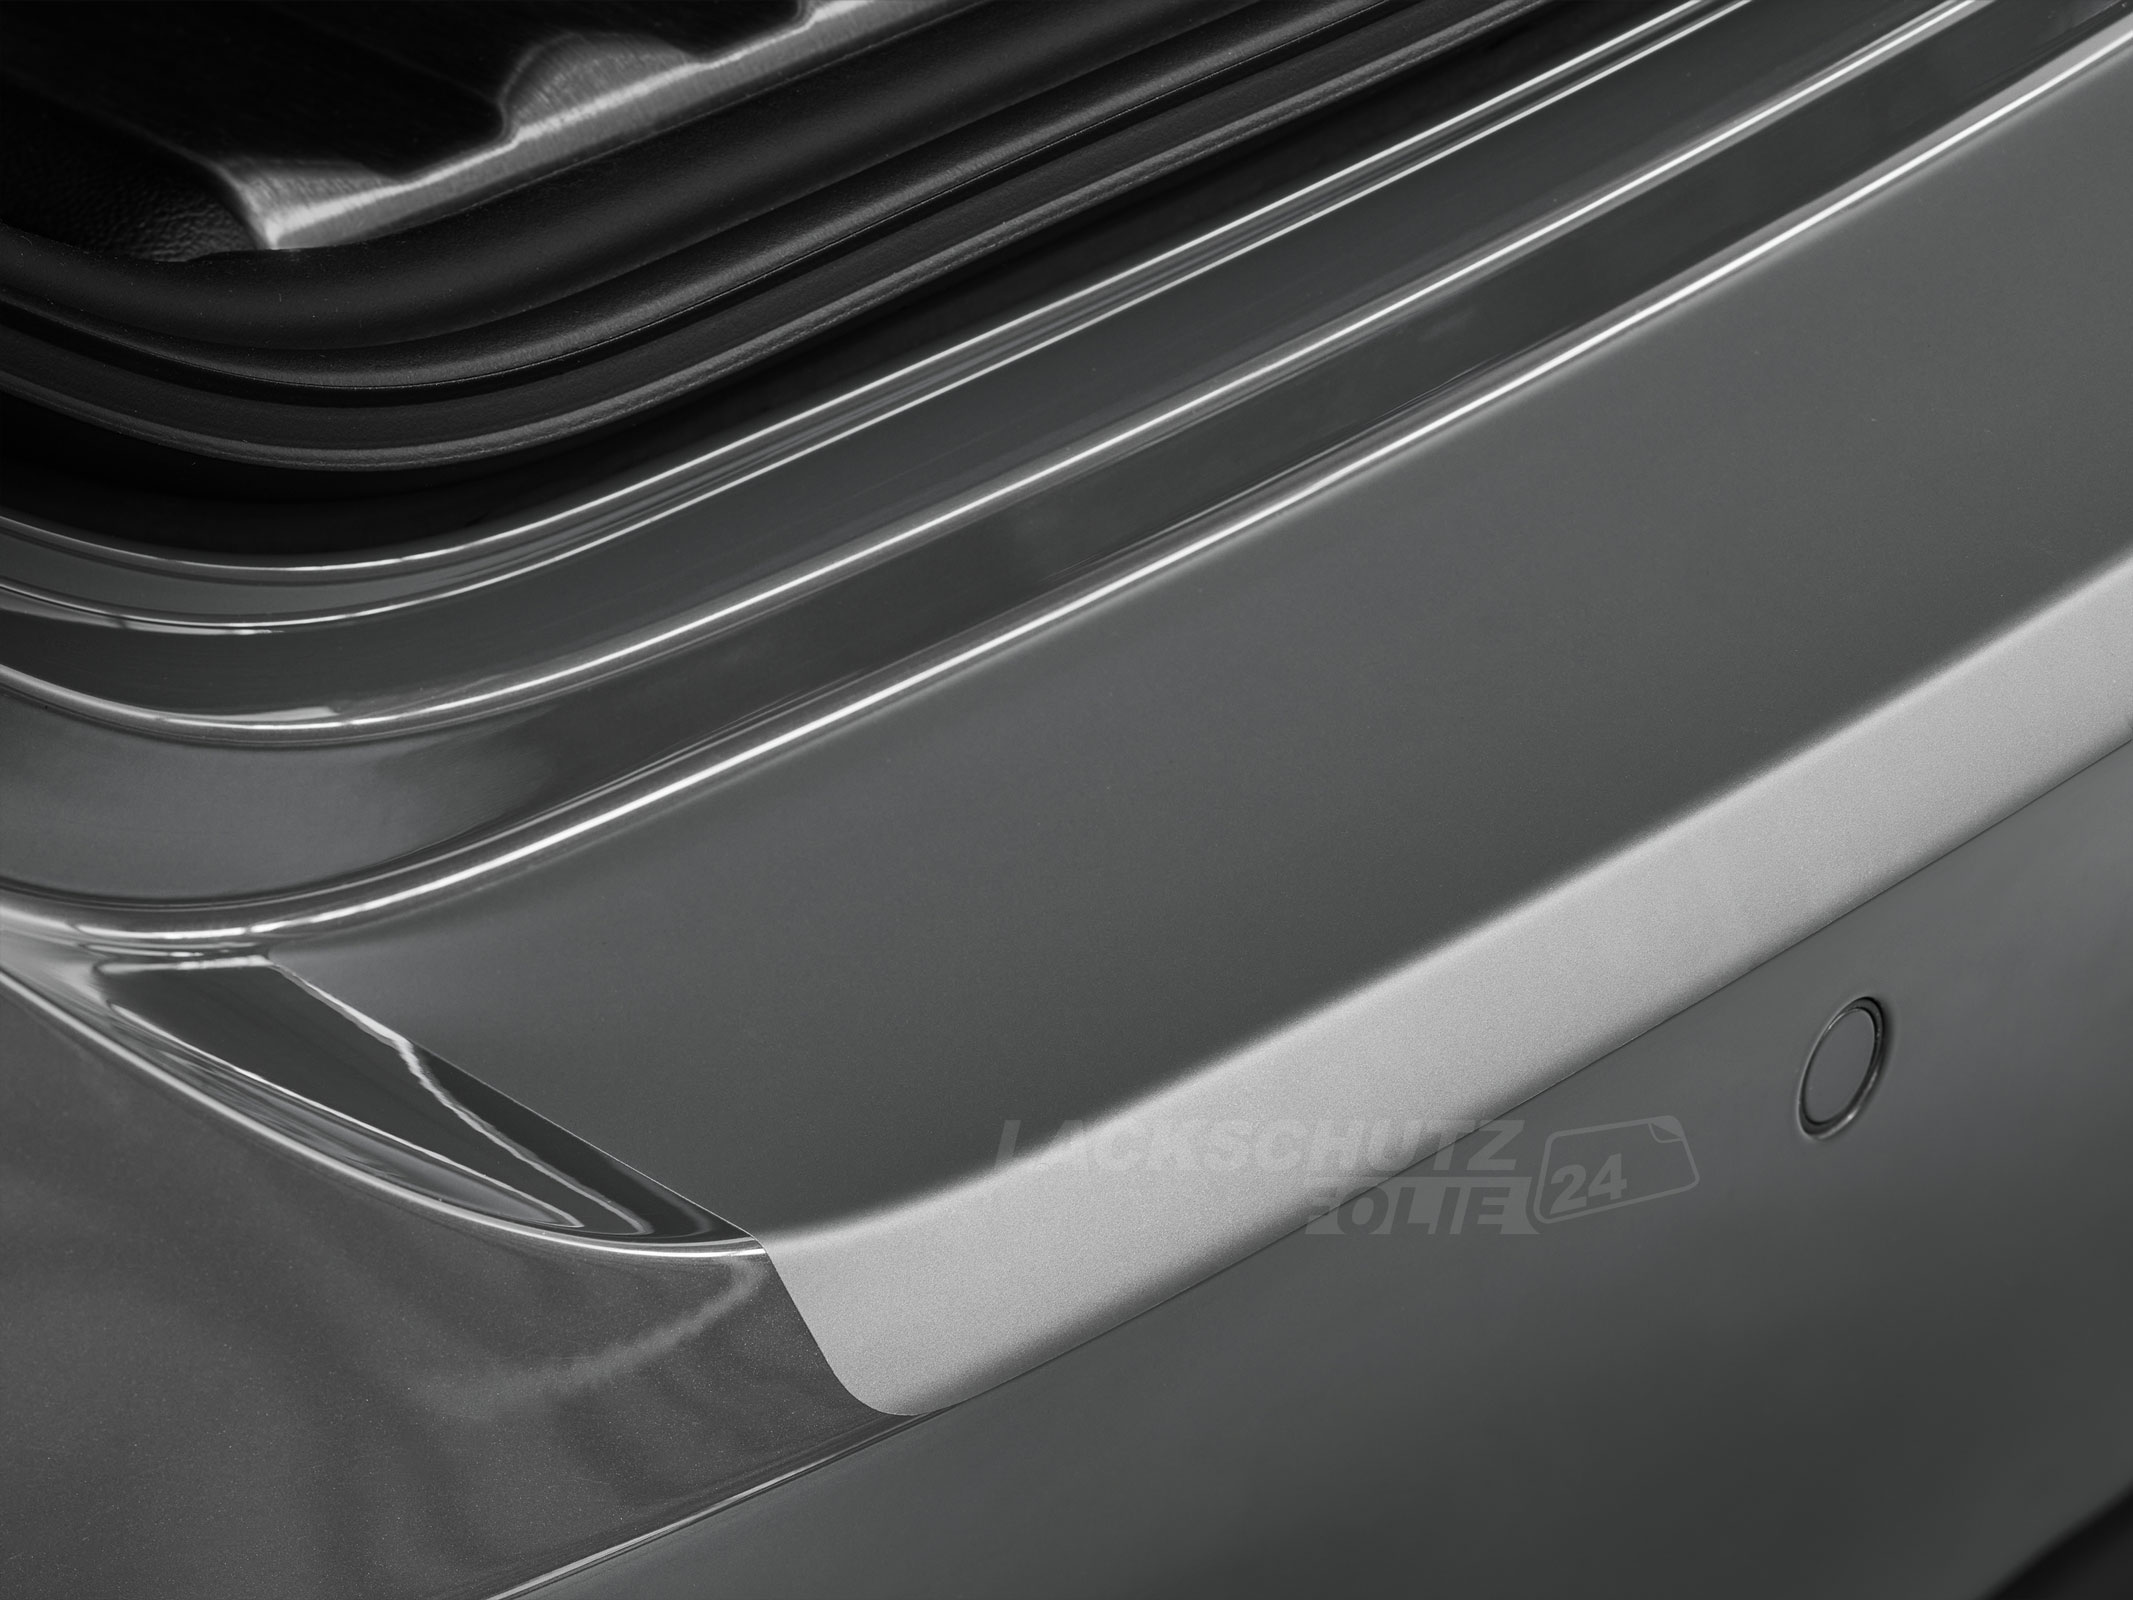 Ladekantenschutzfolie - Transparent Glatt MATT 110 µm stark  für Mazda 2 Typ DY, bis BJ 2007